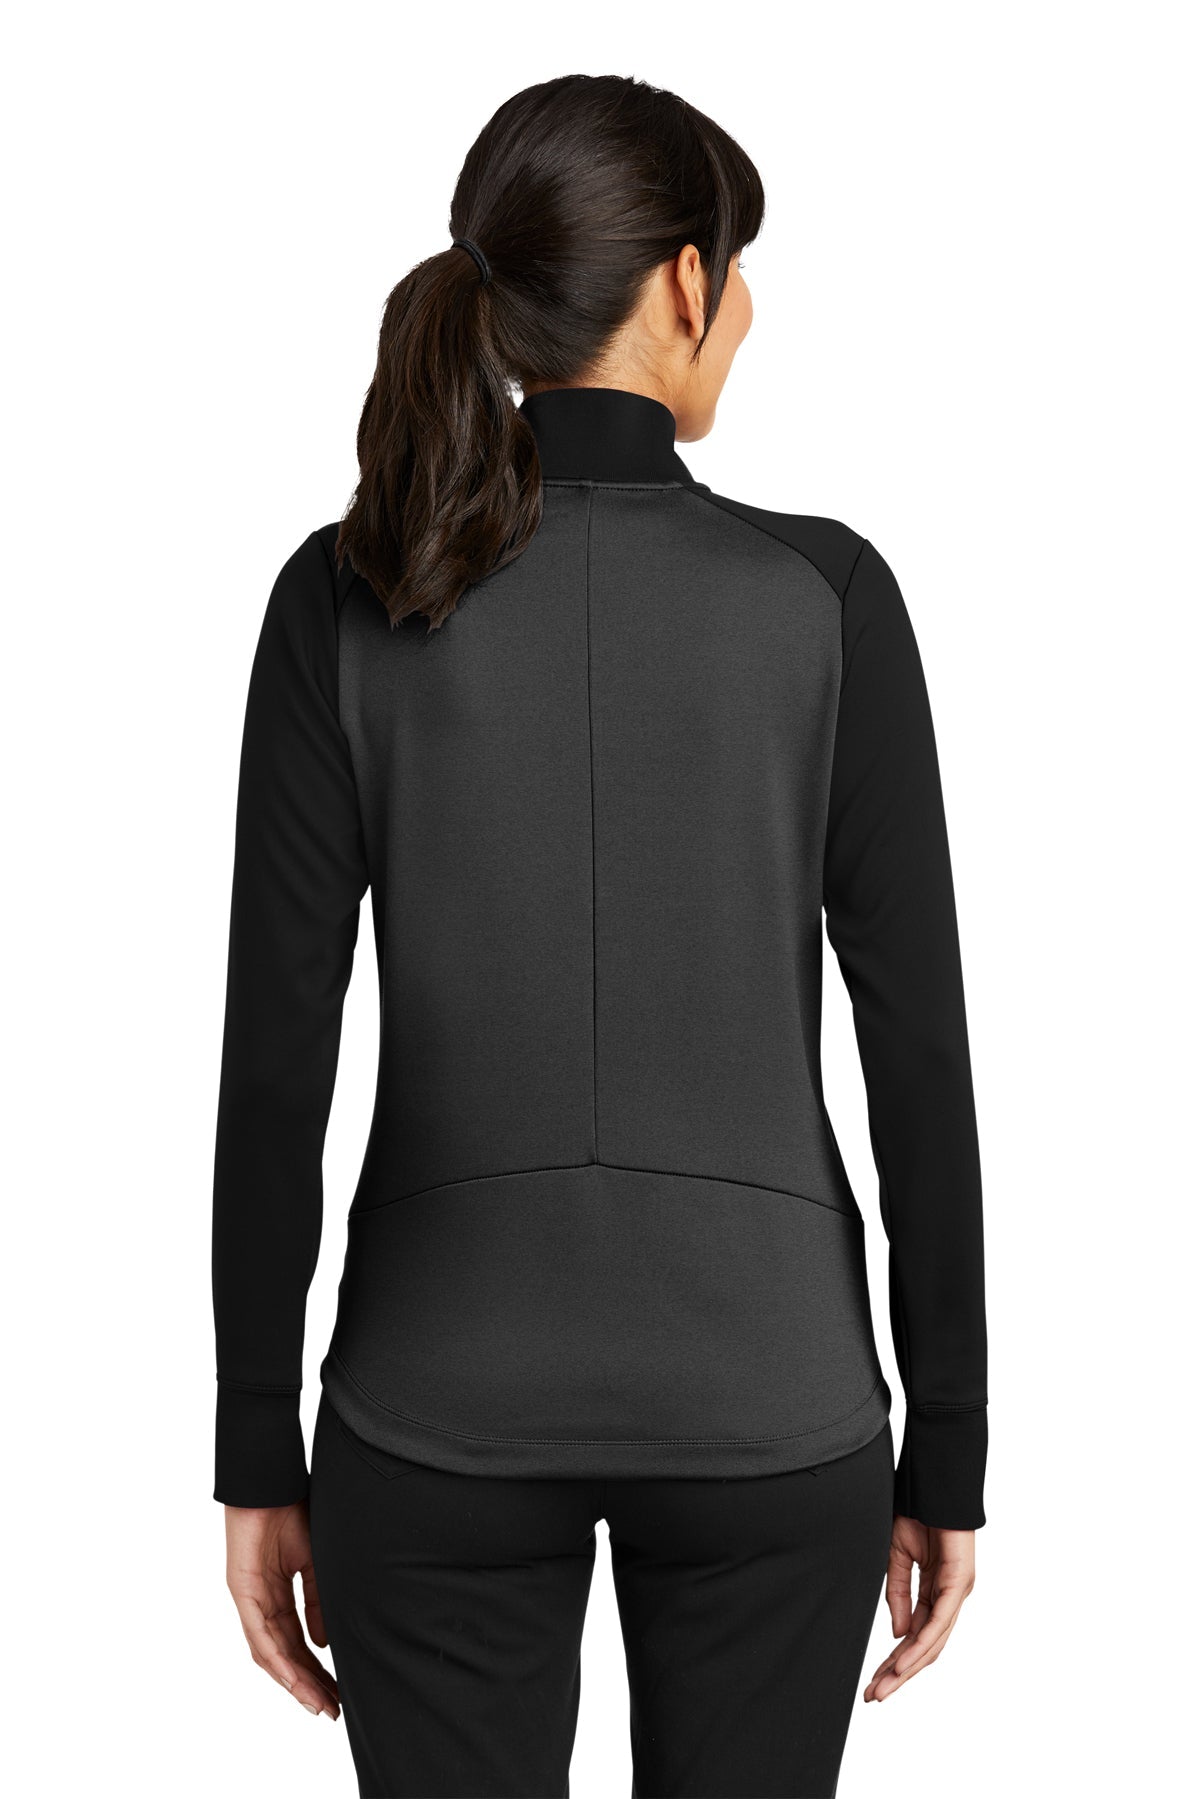 Nike Ladies Dri-FIT Custom Quarter Zip Cover-Ups, Anthracite Heather/ Black